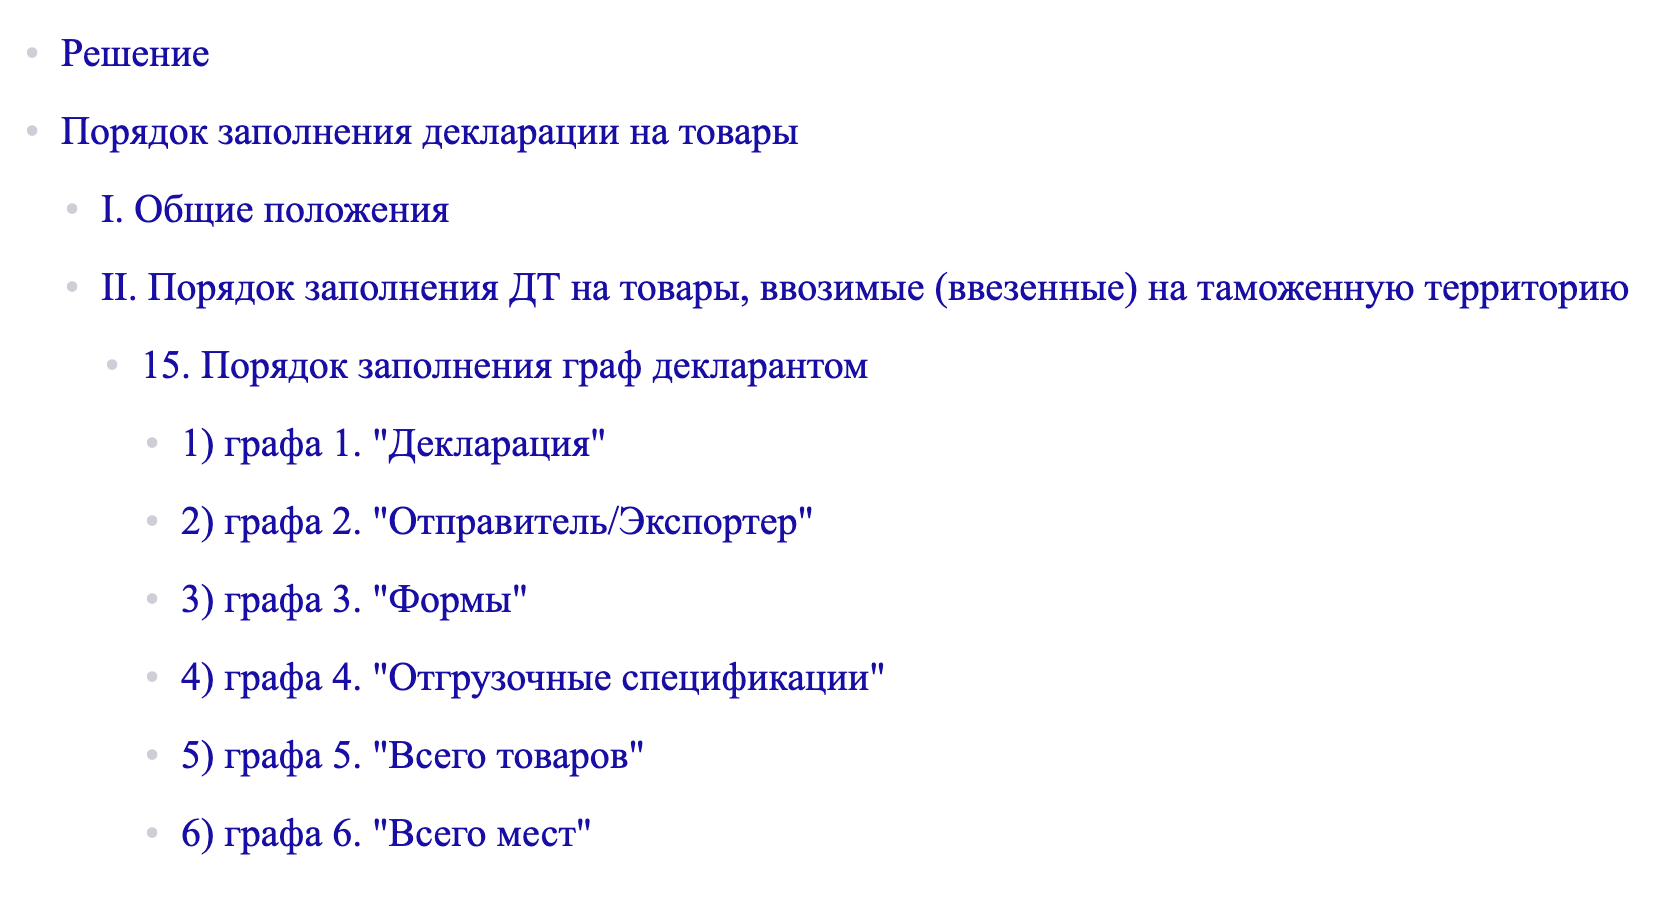 В документе есть правила для всех граф из декларации. Источник: consultant.ru